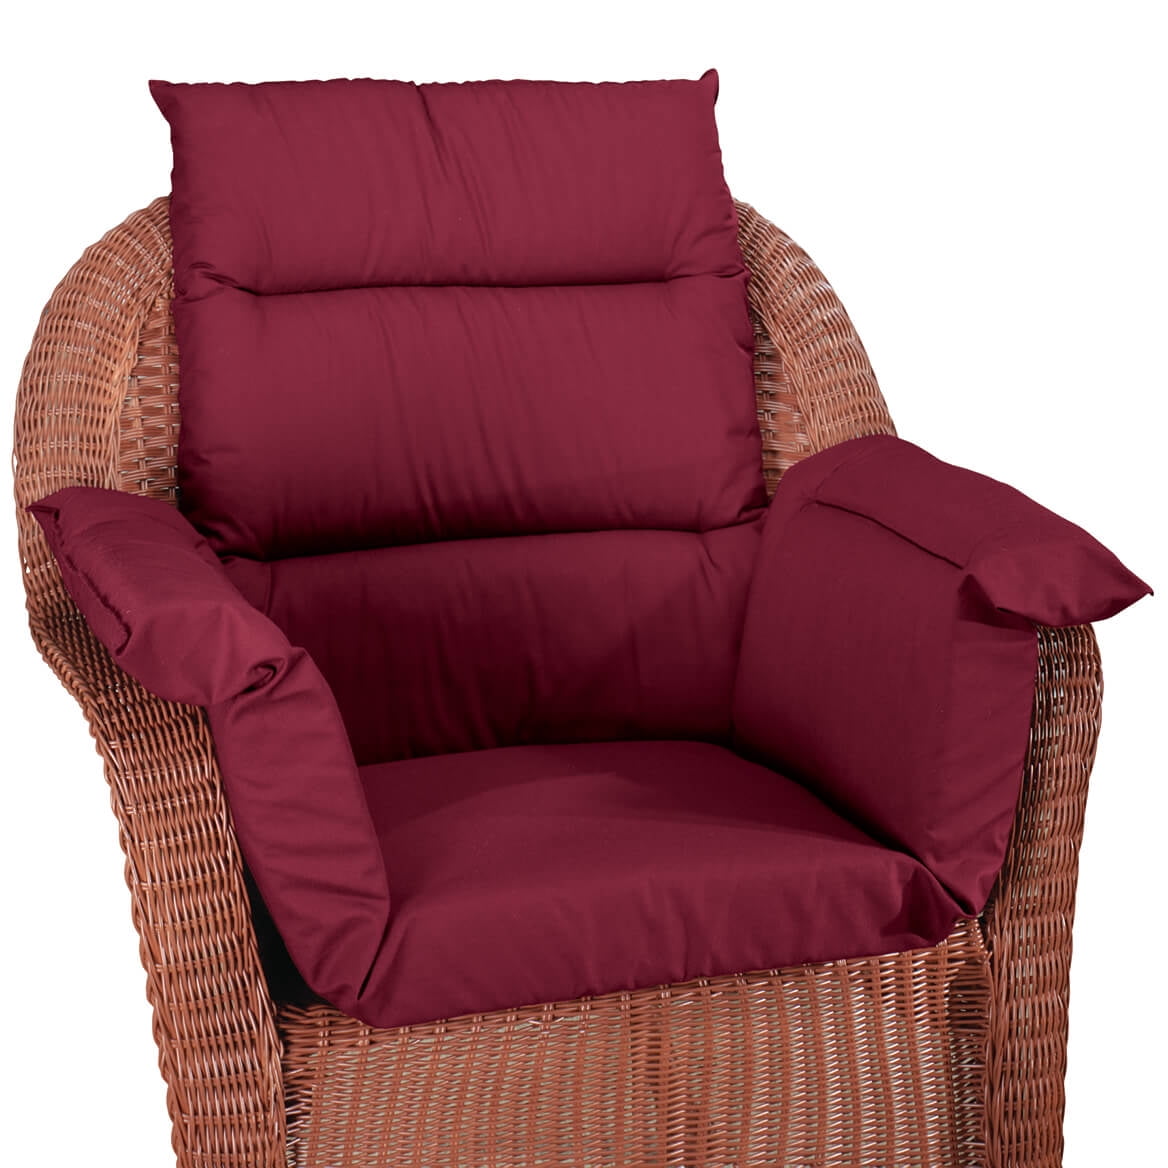 Total Chair Cushion– CareApparel